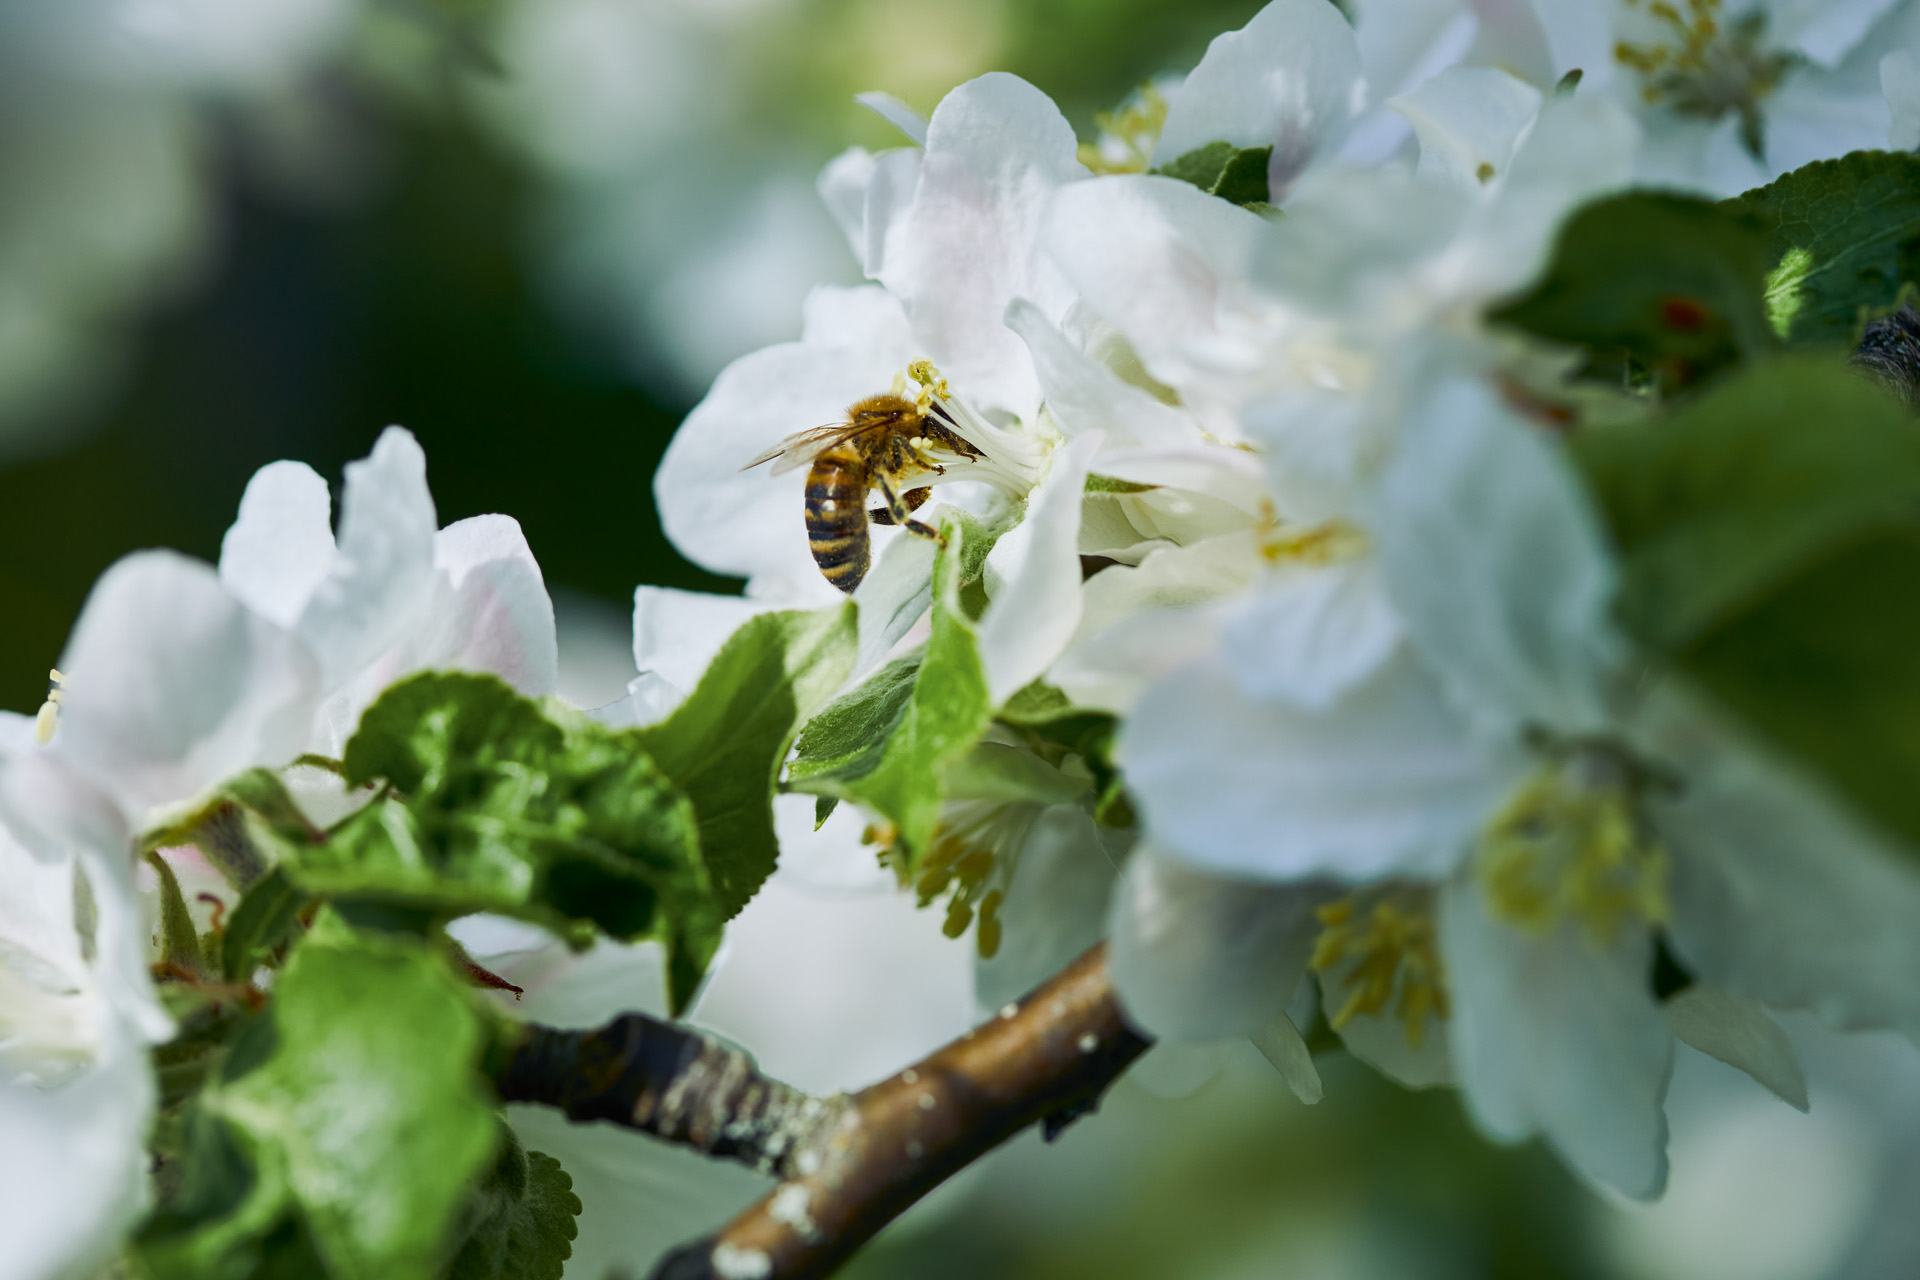 Primer plano de una abeja en una flor blanca